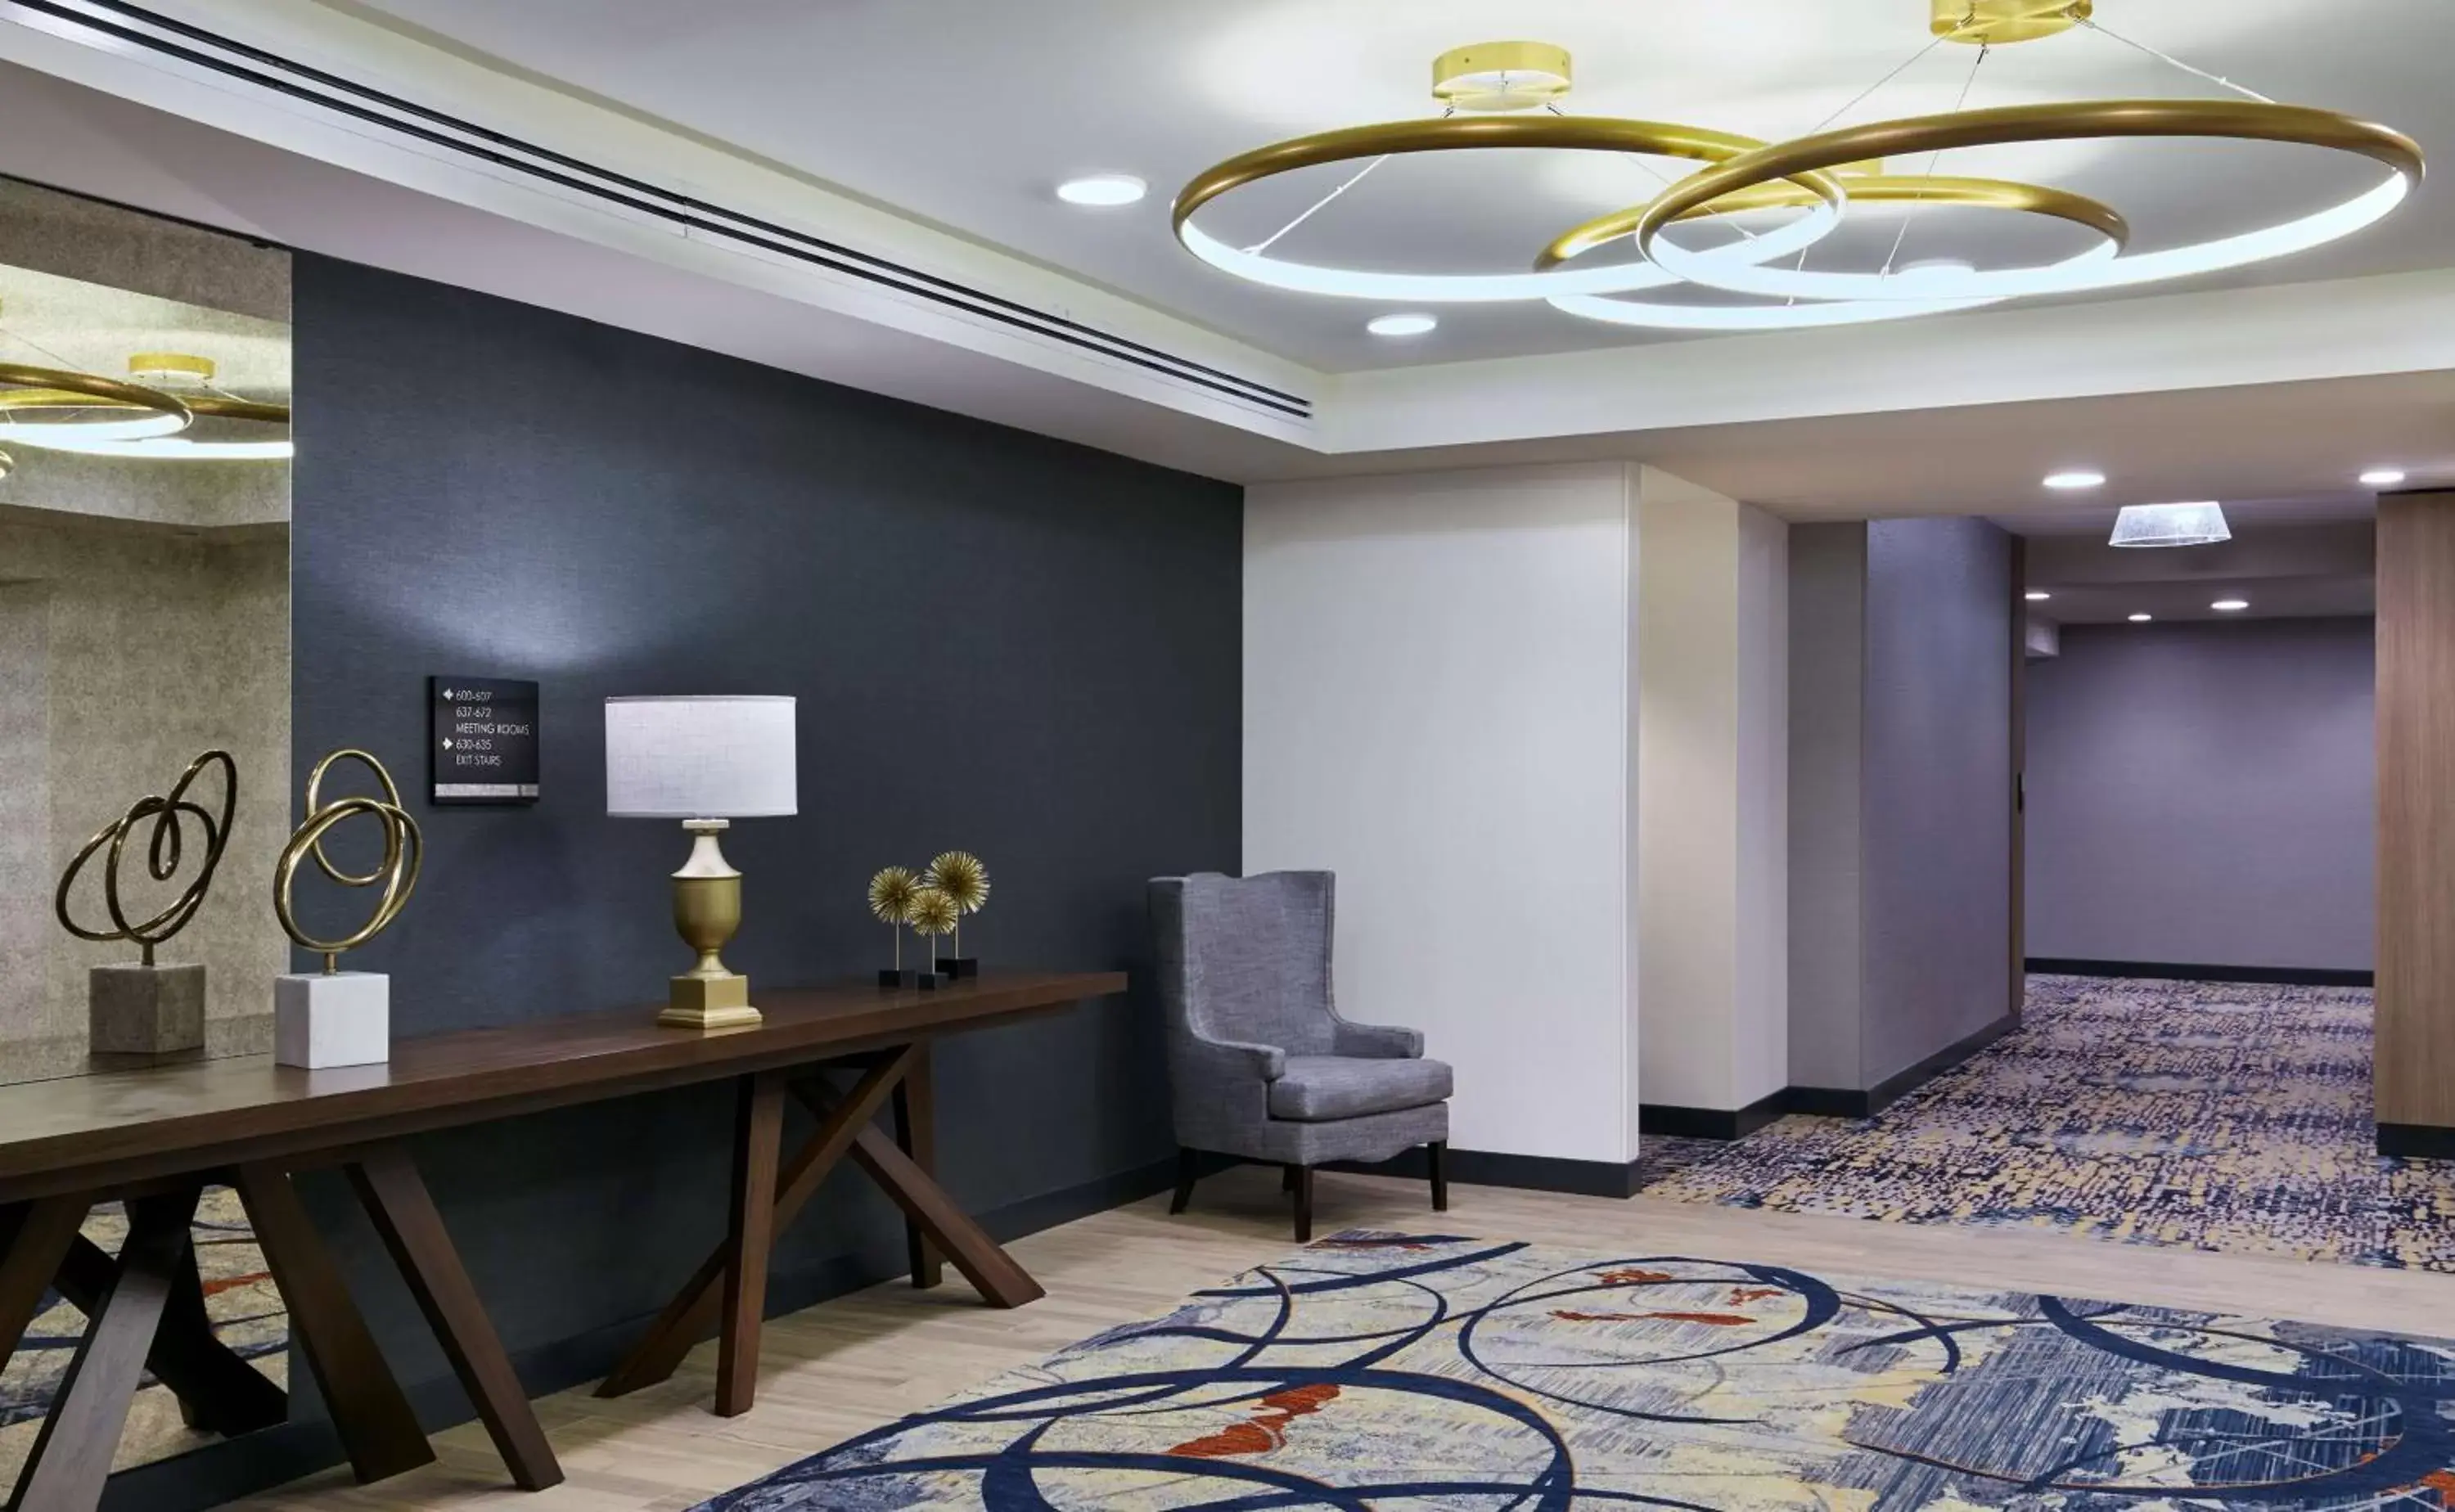 Lobby or reception in The Inn at Penn, A Hilton Hotel